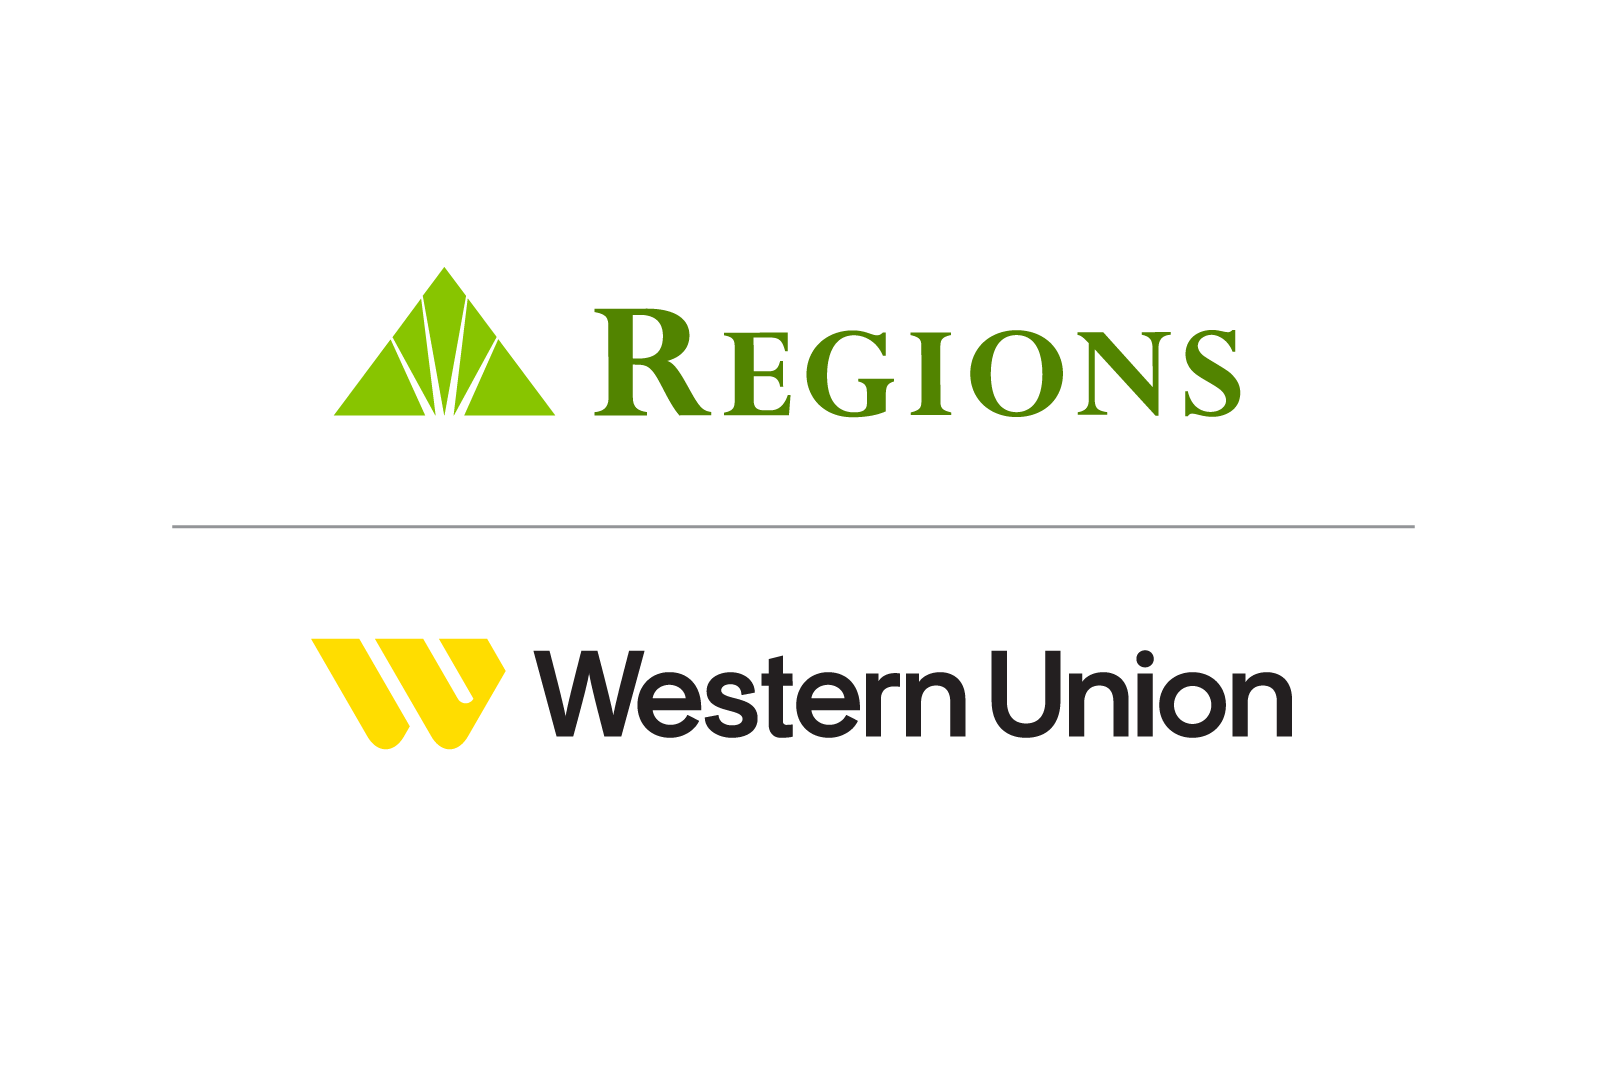 Regions and Western Union logos